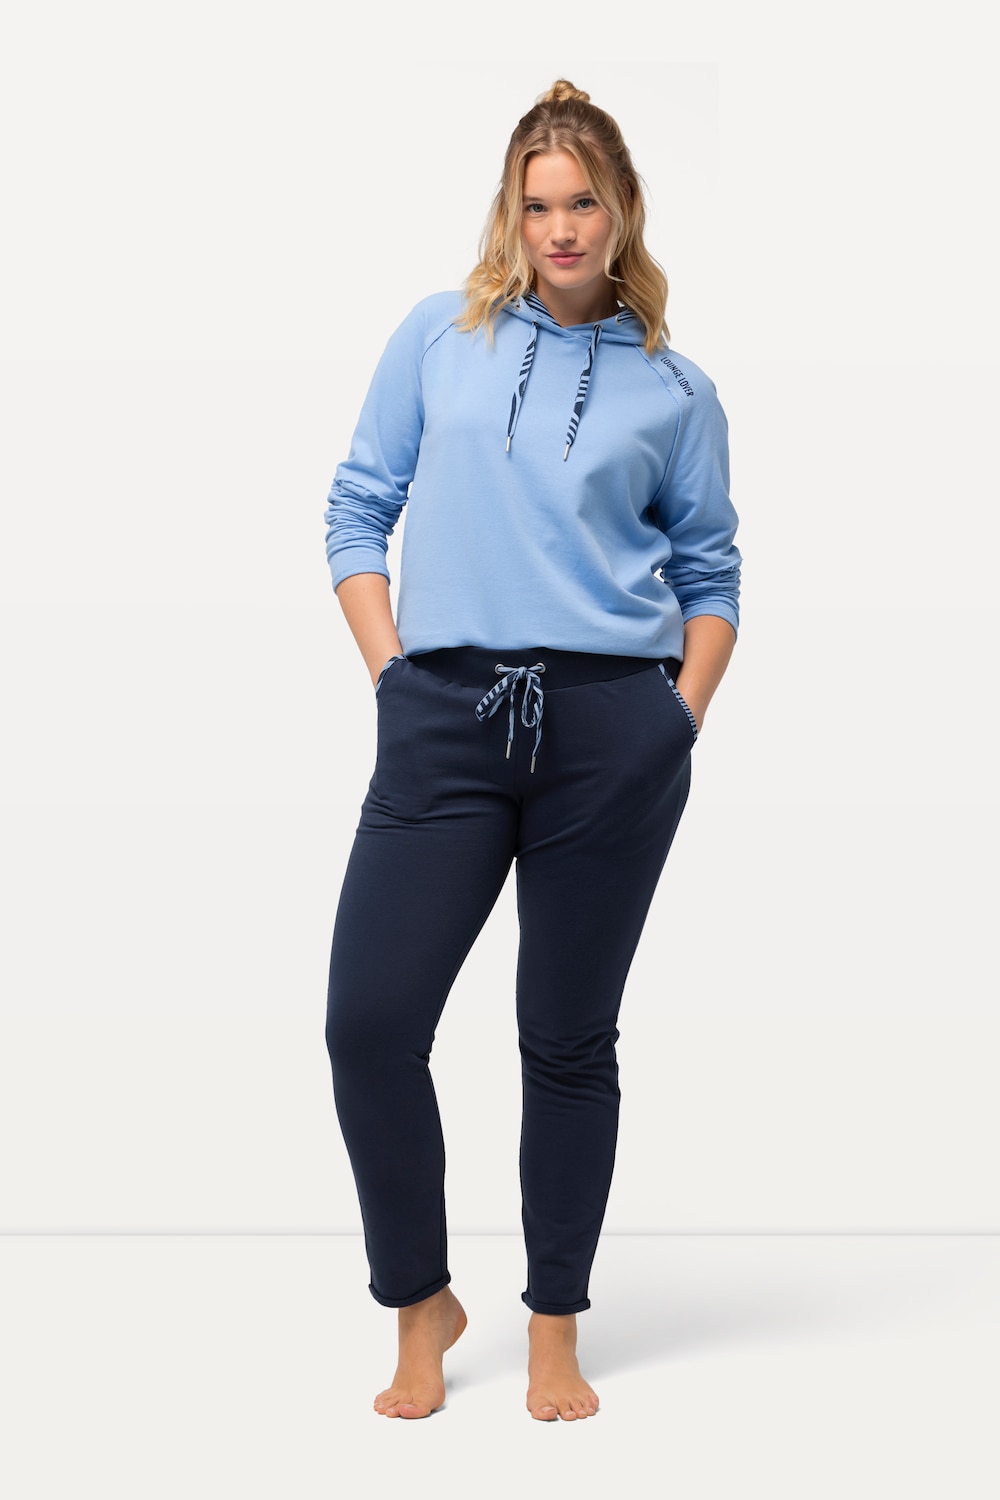 Große Größen Loungewear-Hose, Damen, blau, Größe: 62/64, Baumwolle/Polyester, Ulla Popken von Ulla Popken